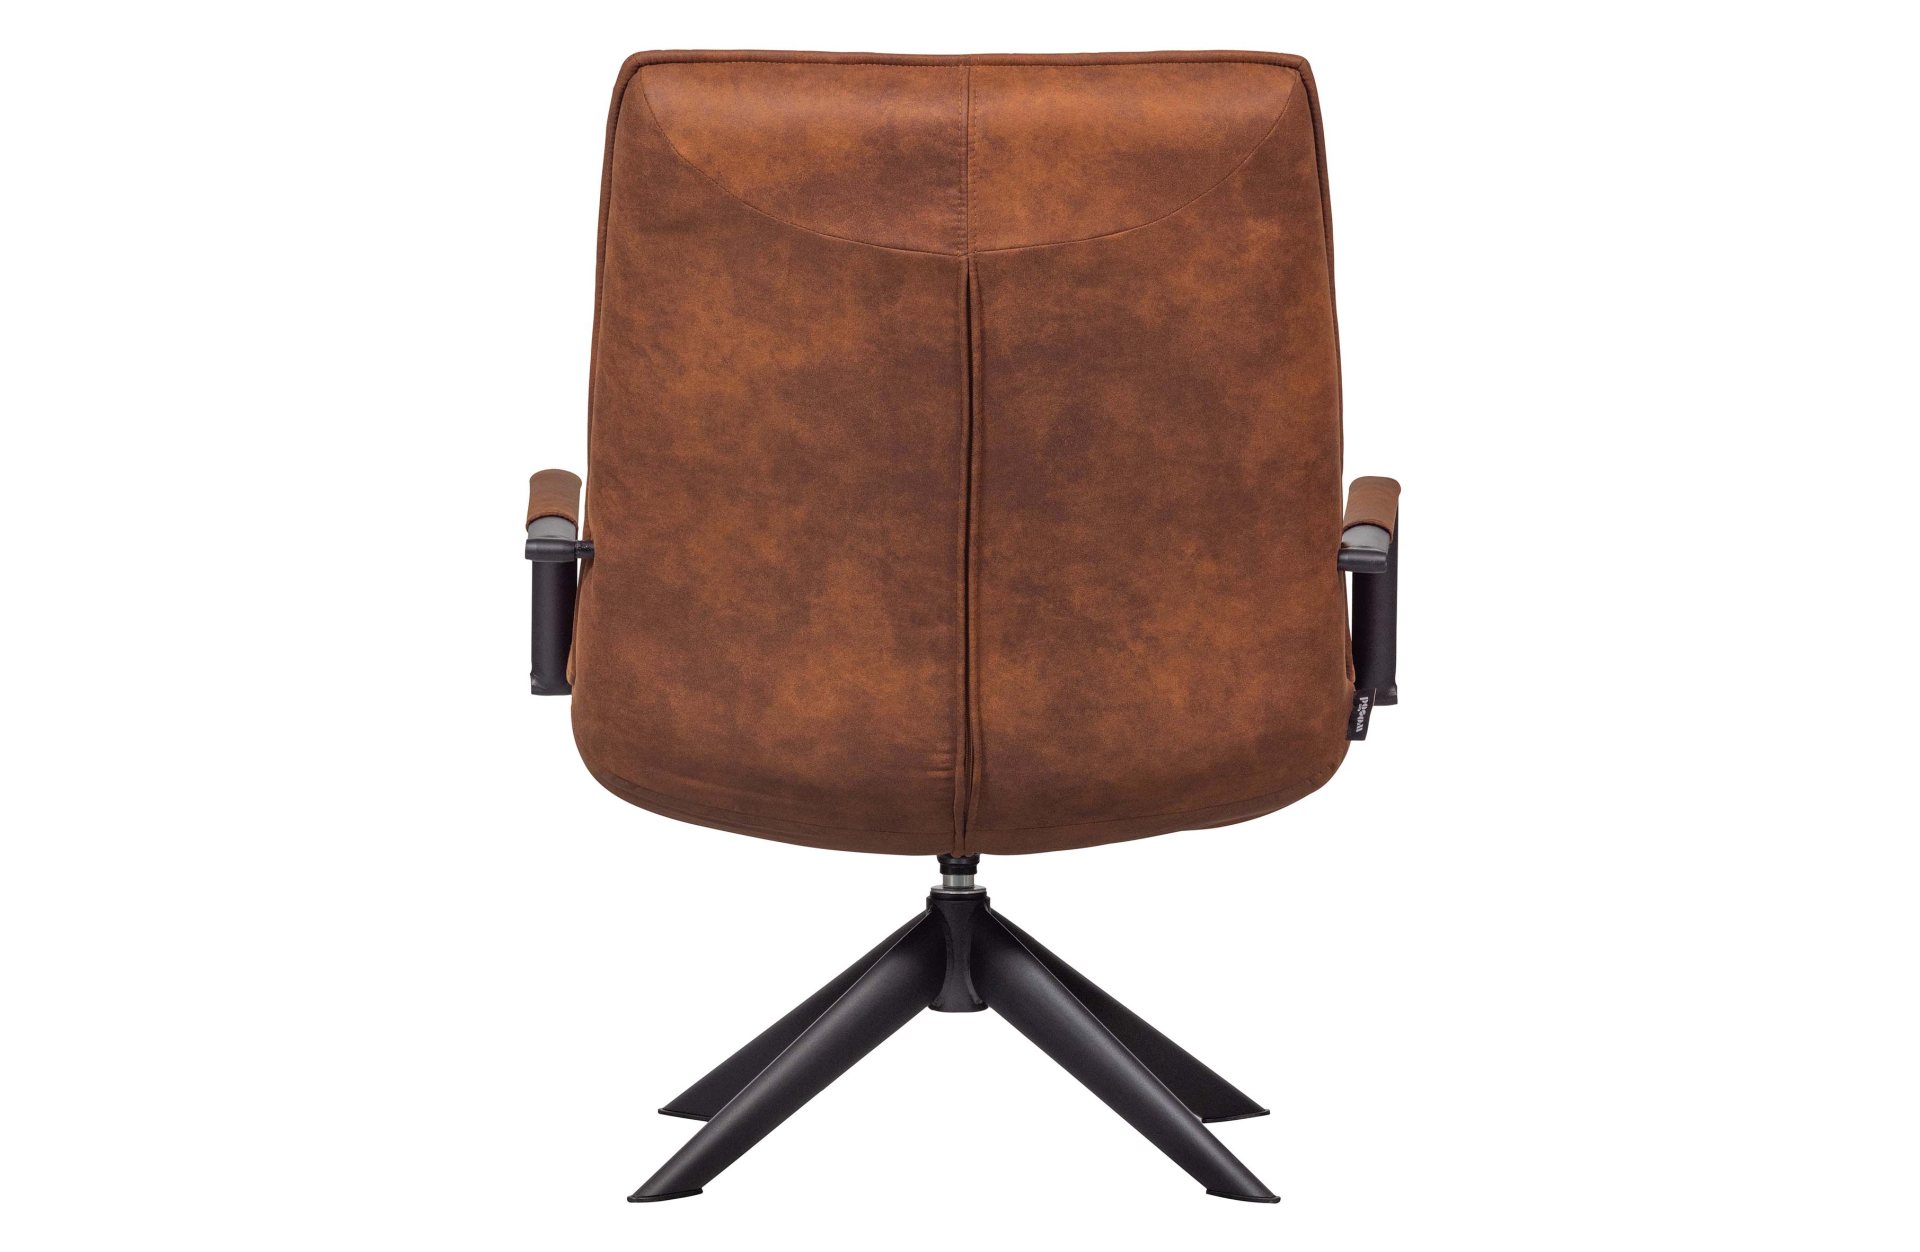 Der Drehsessel Jouke überzeugt mit seinem modernem Design. Gefertigt wurde er aus PU-Leder, welches einen Cognac Farbton besitzt. Das Gestell ist aus Metall und hat eine schwarze Farbe. Der Sessel hat eine Drehfunktion und besitzt eine Sitzhöhe von 43 cm.